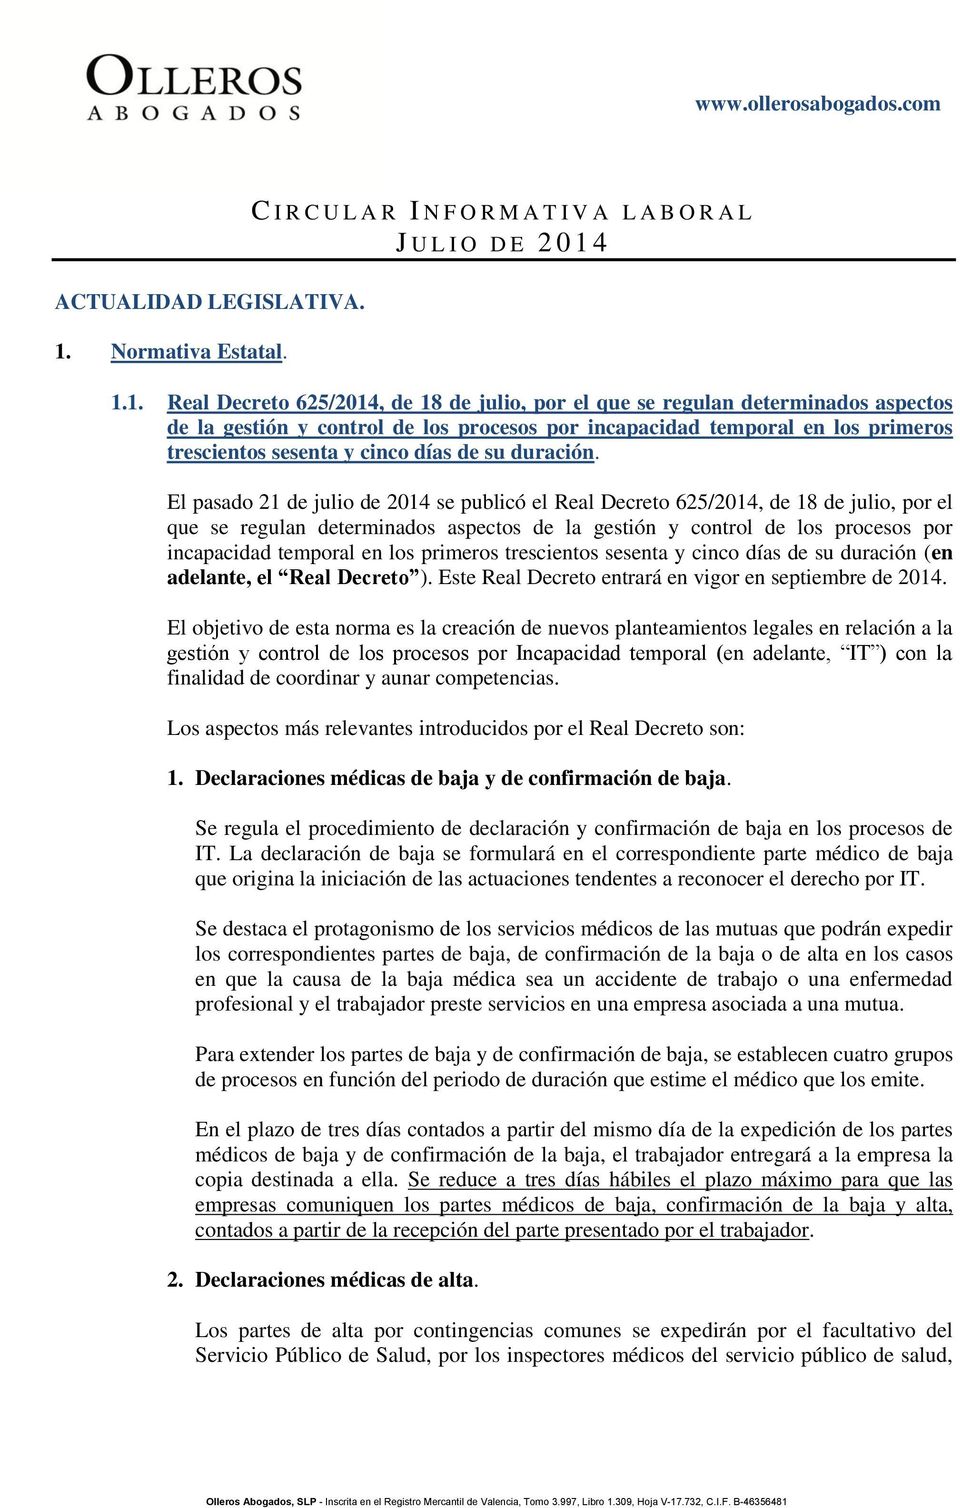 1.1. Real Decreto 625/2014, de 18 de julio, por el que se regulan determinados aspectos de la gestión y control de los procesos por incapacidad temporal en los primeros trescientos sesenta y cinco